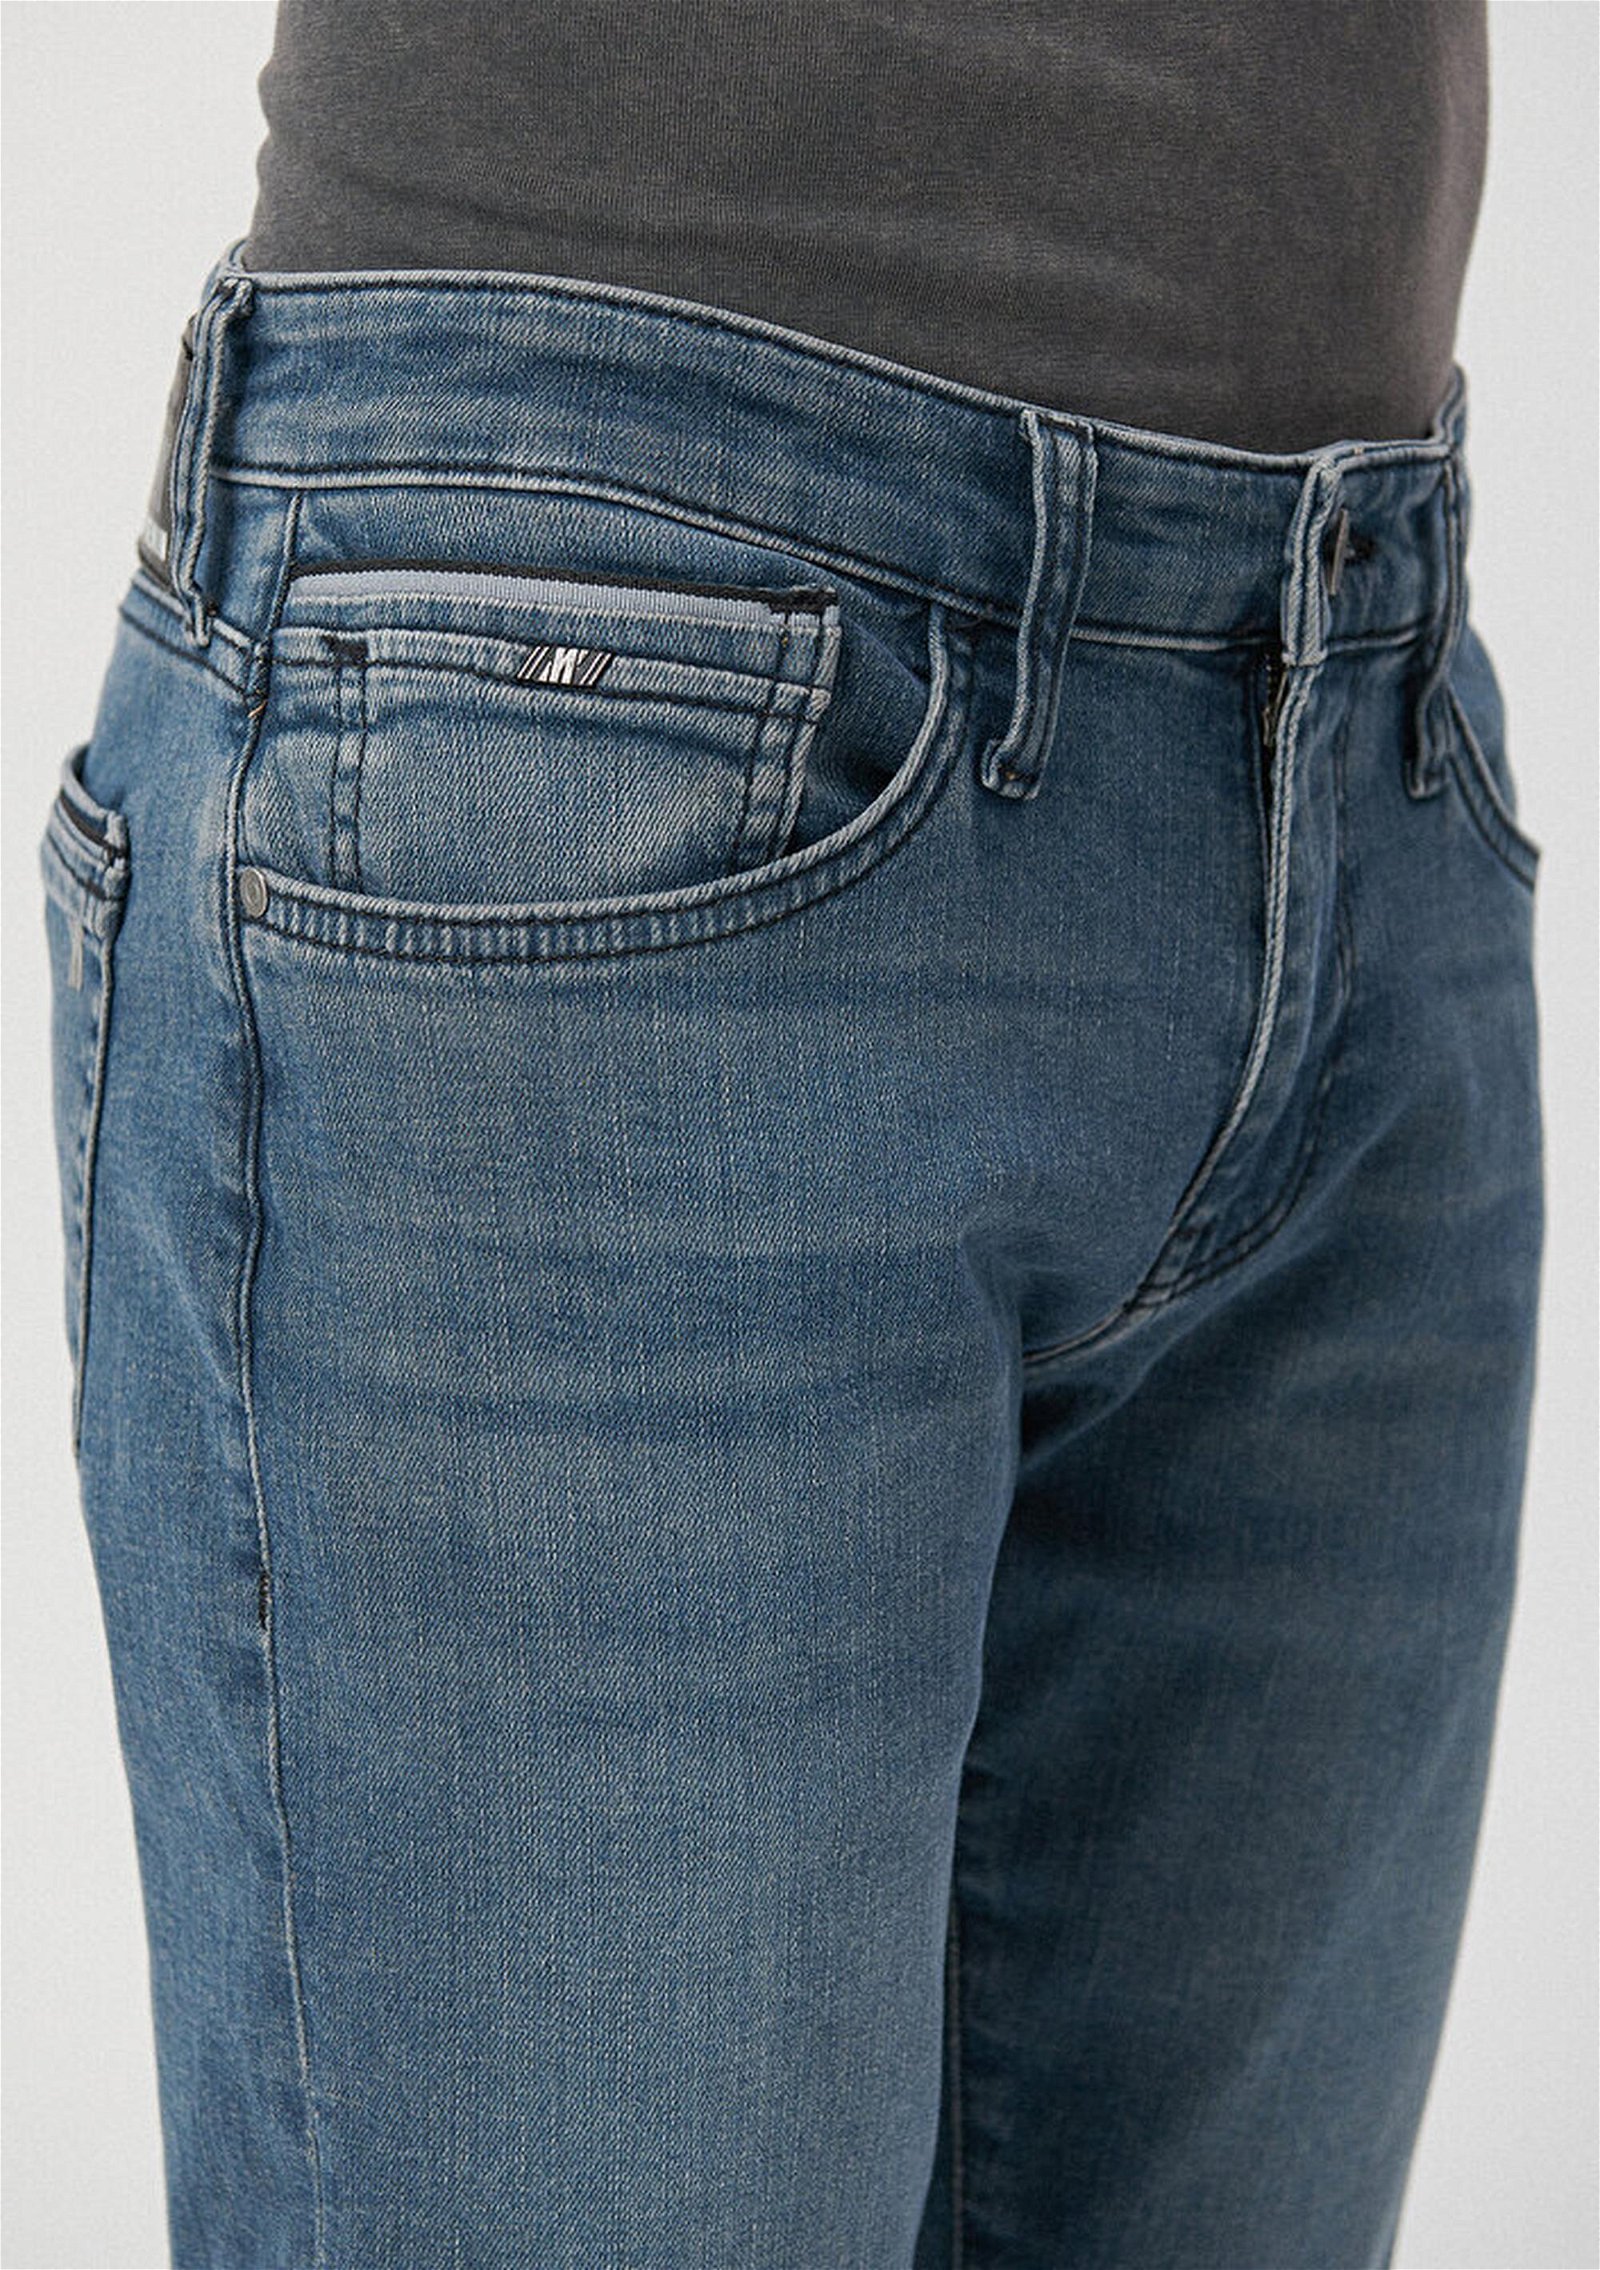 Mavi Marcus Koyu Mavi Premium Jean Pantolon 0035185210